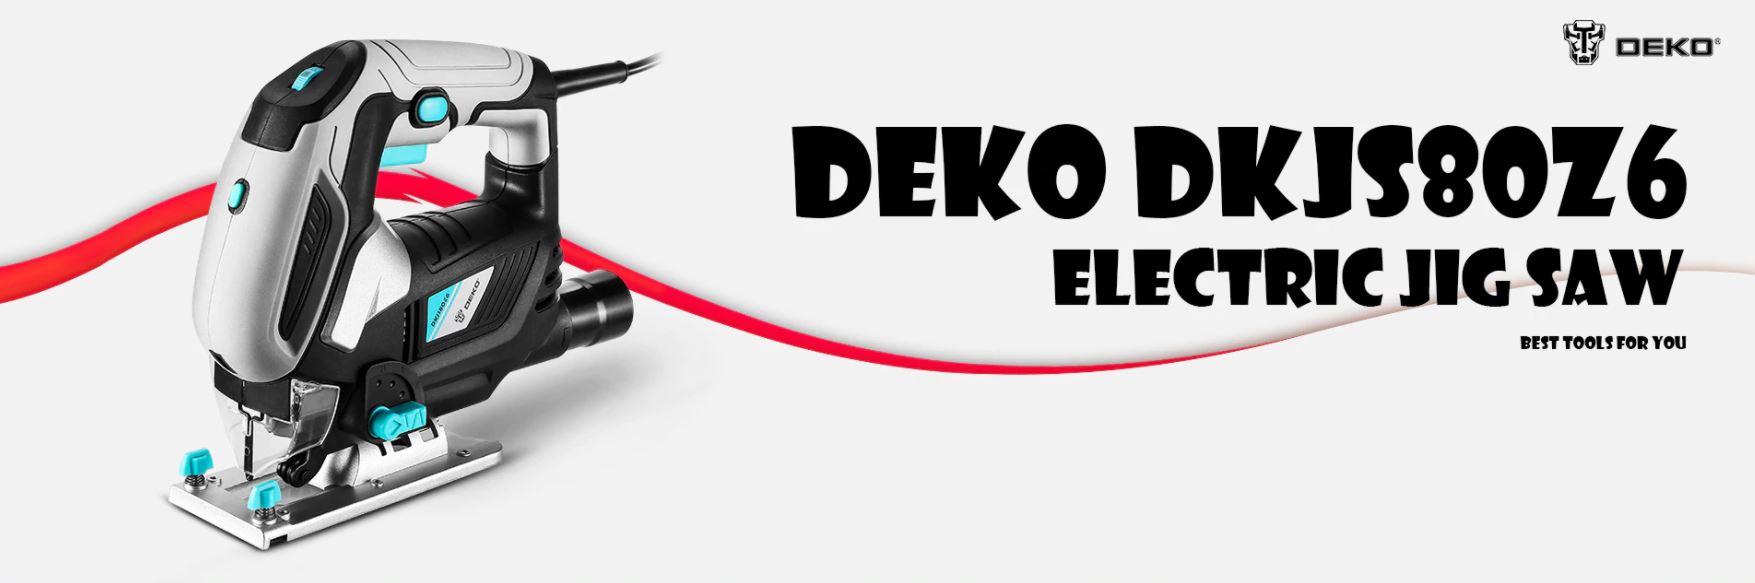 Najlepsze narzędzia z Aliexpress - promocja produktów marki DEKO - wyrzynarka DEKO DKJS80Z6